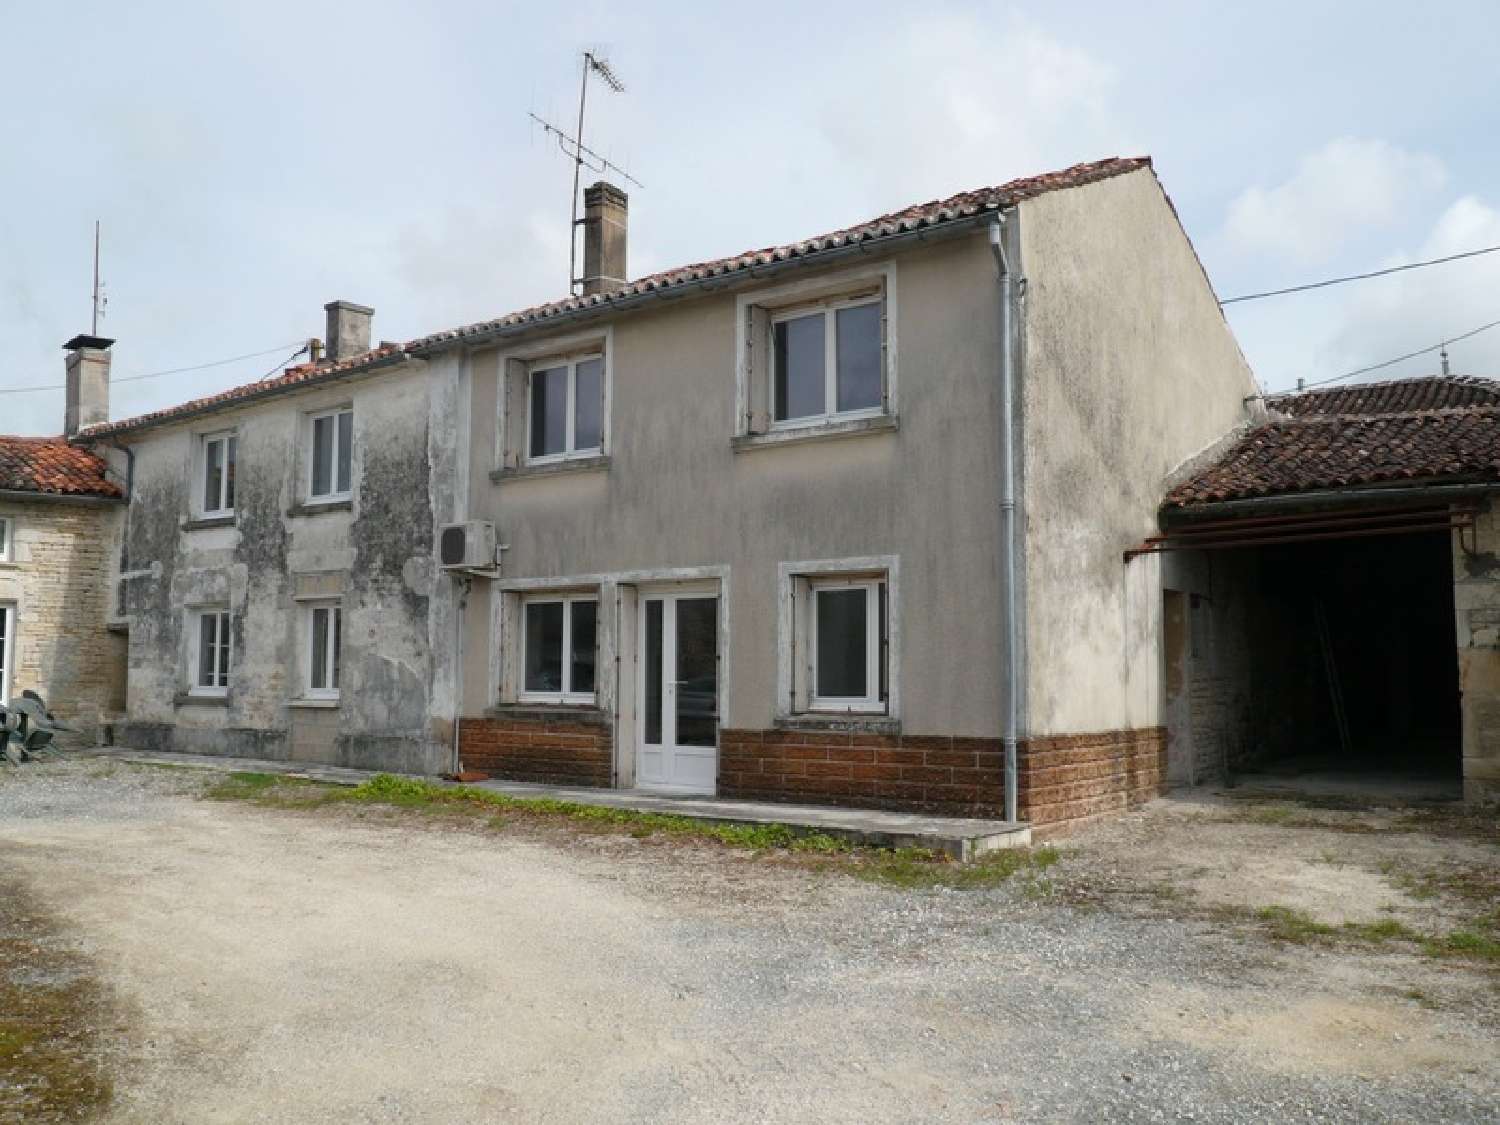  à vendre maison de village Brie-sous-Matha Charente-Maritime 2